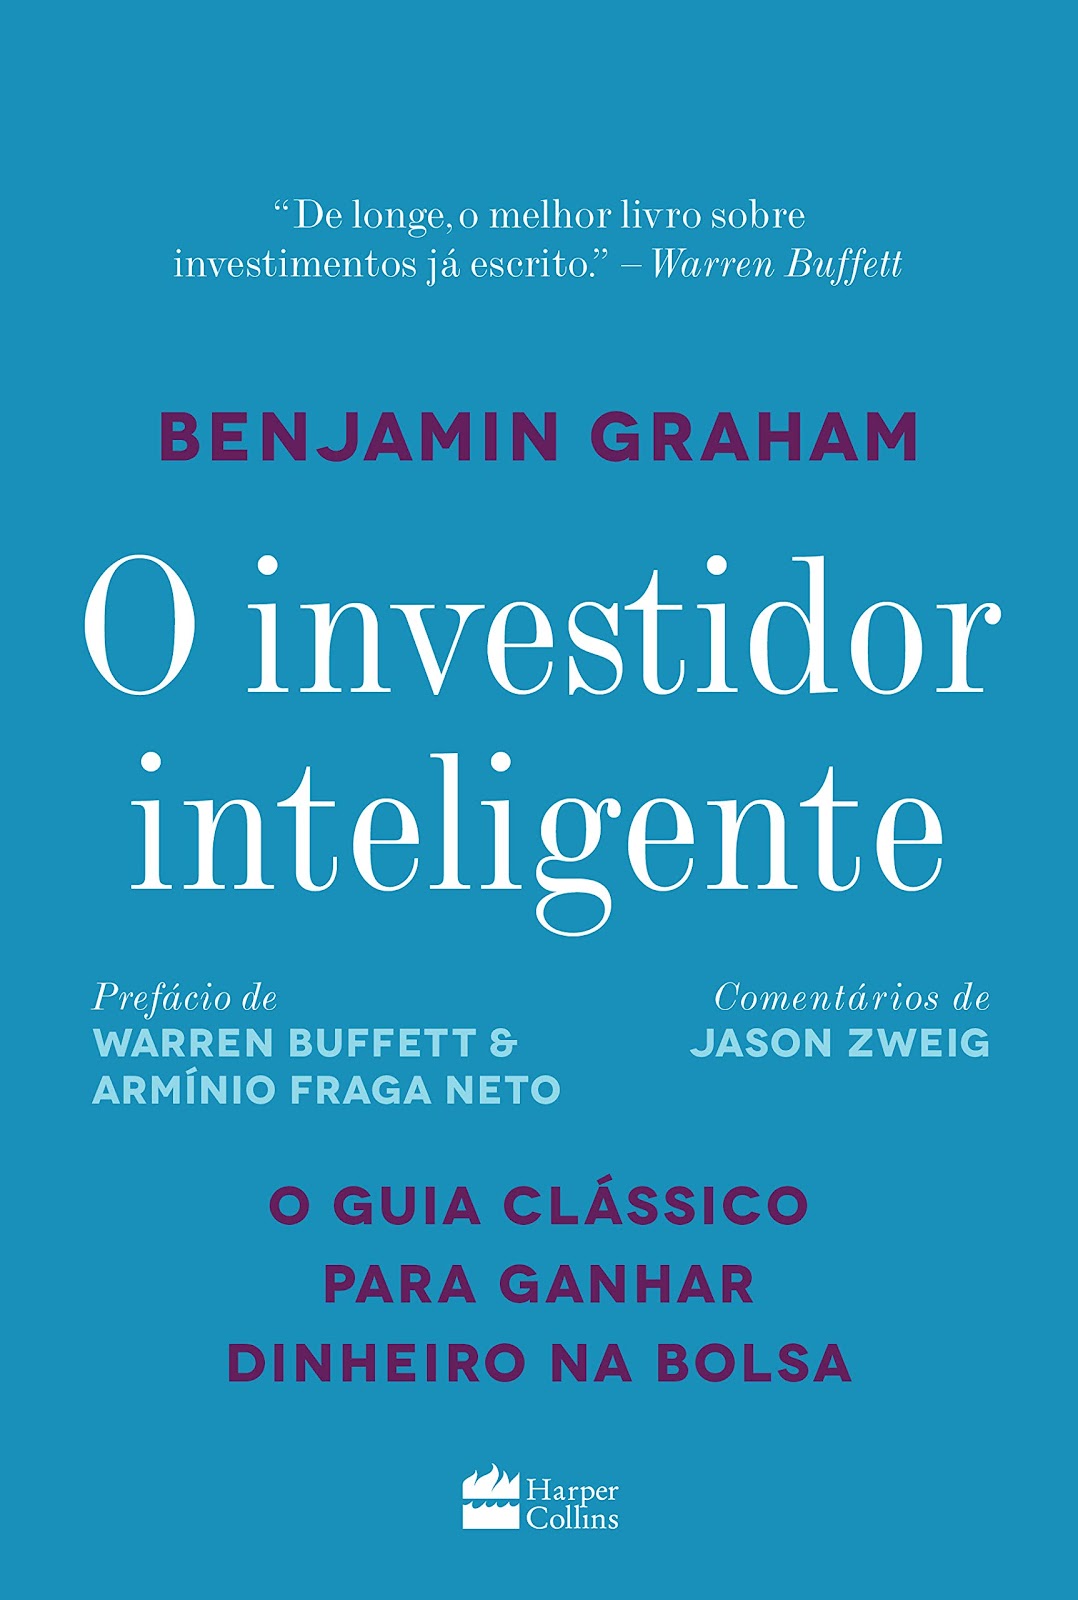 Livro “O Investidor Inteligente”